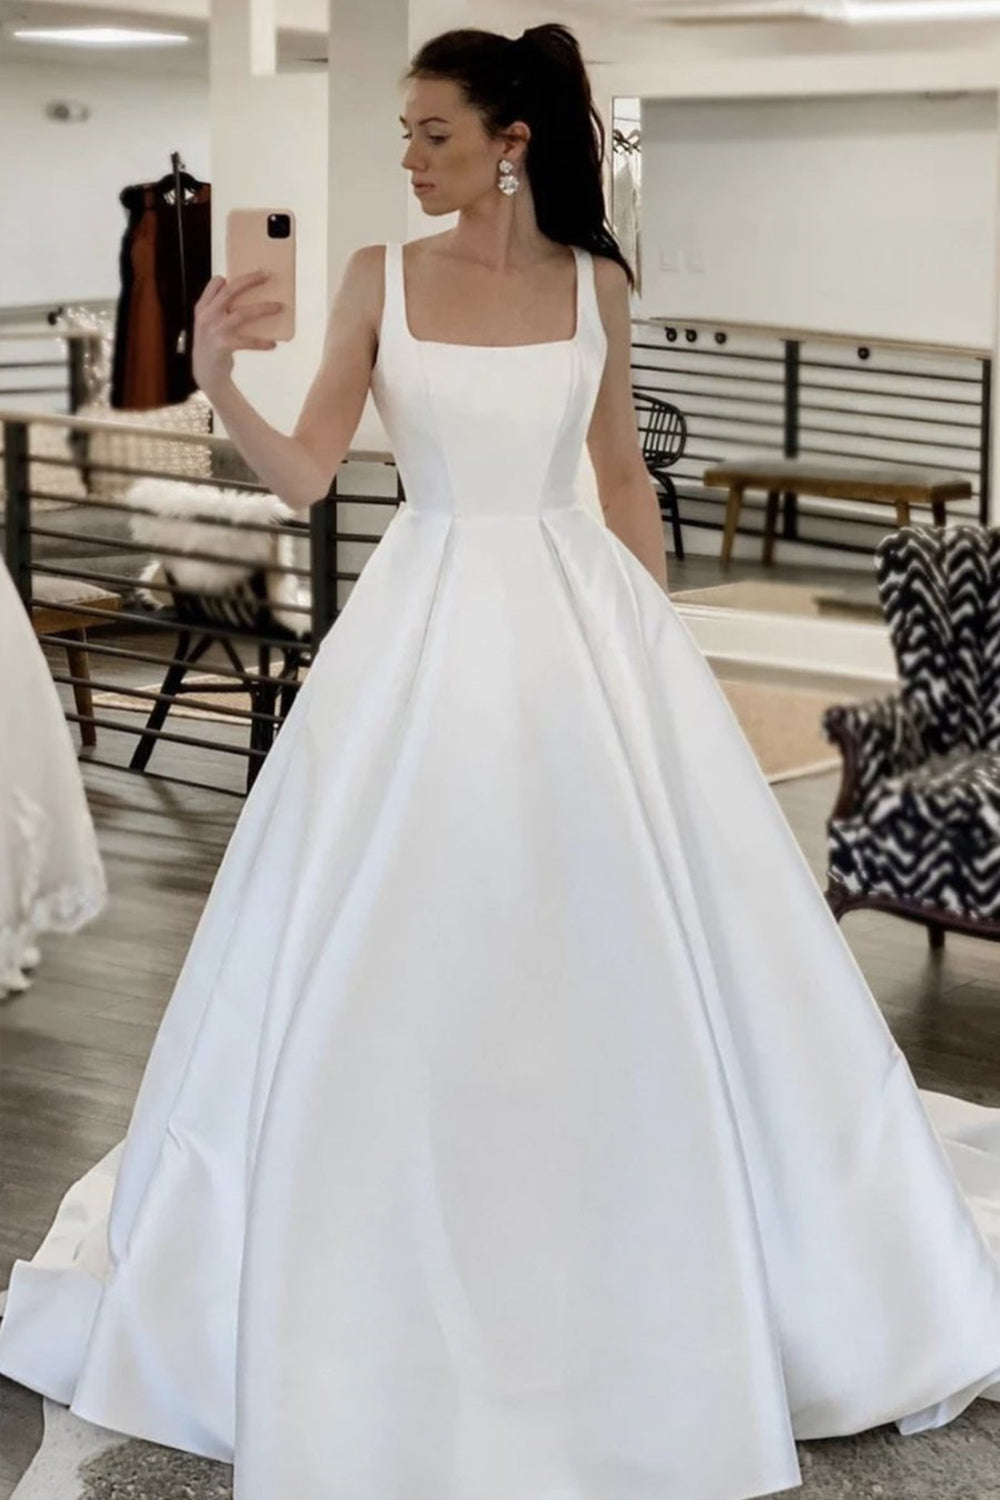 White Knee Length Dresses | Knee Length Dress - June Bridals